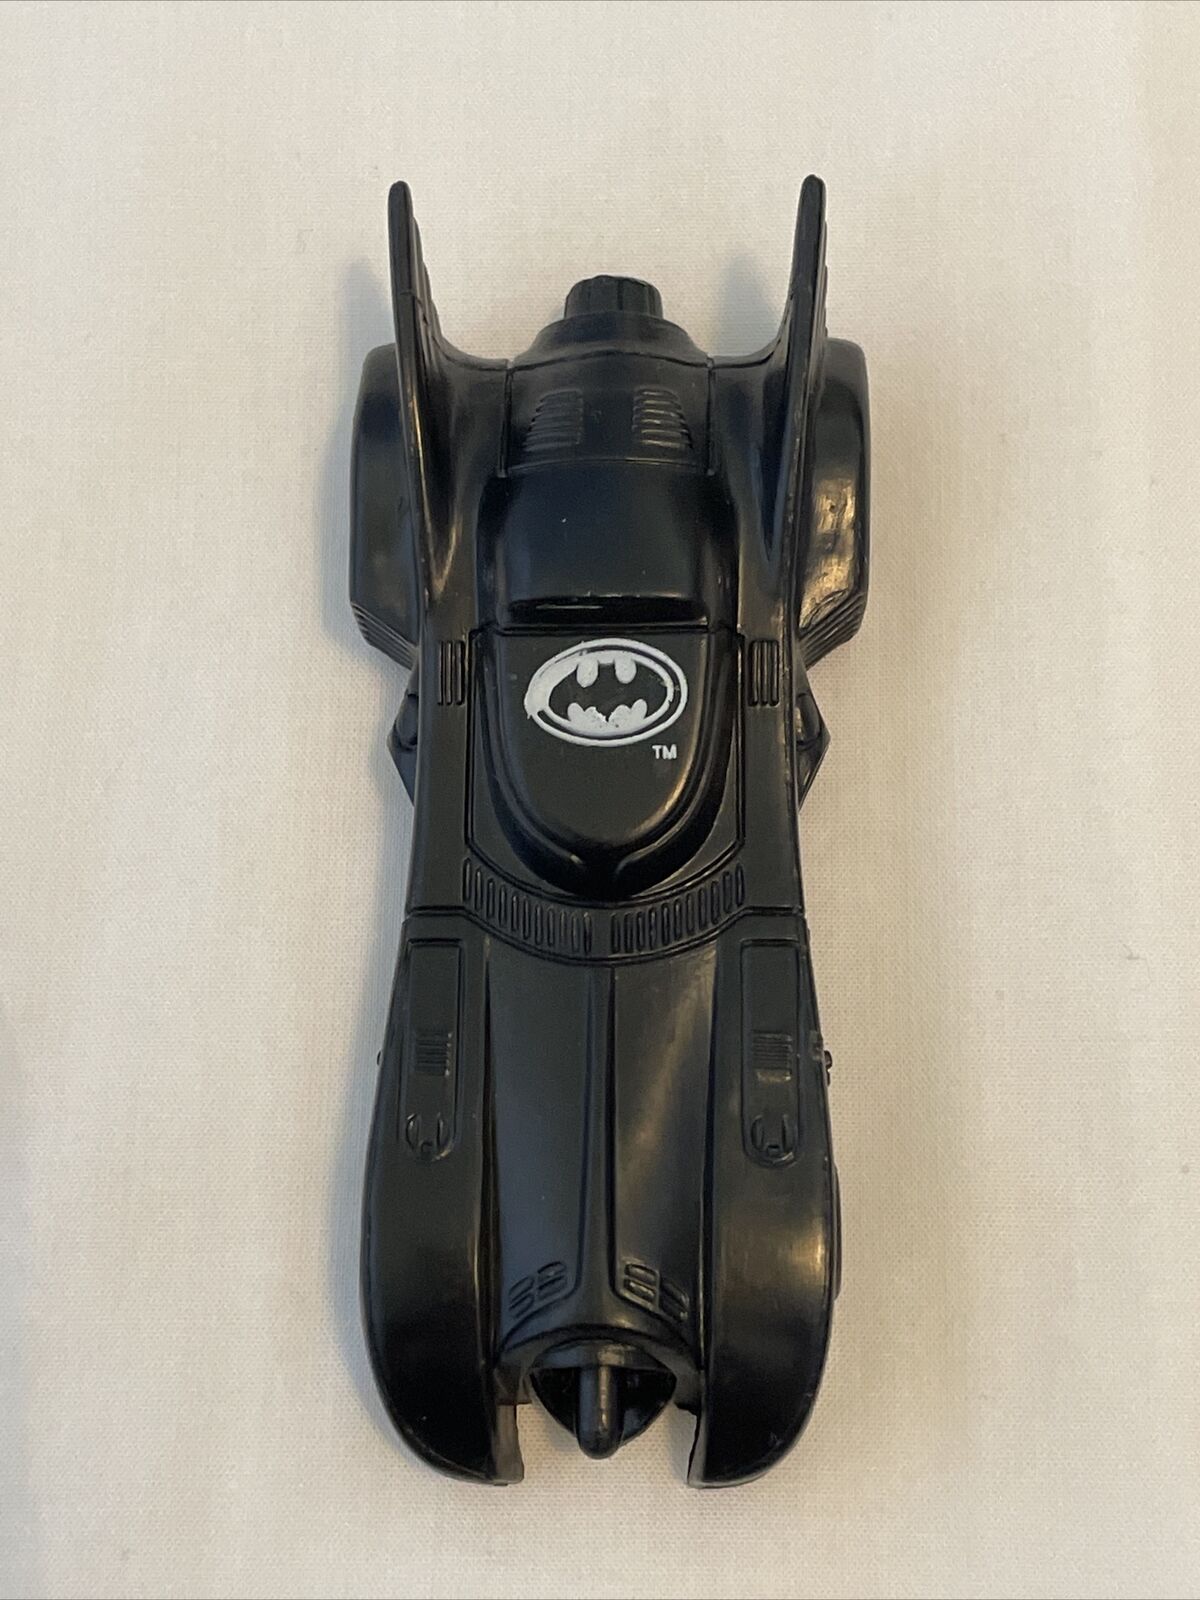 1991 Vintage DC Comics Batman Batmobile Car Candy Sweets Container Toy